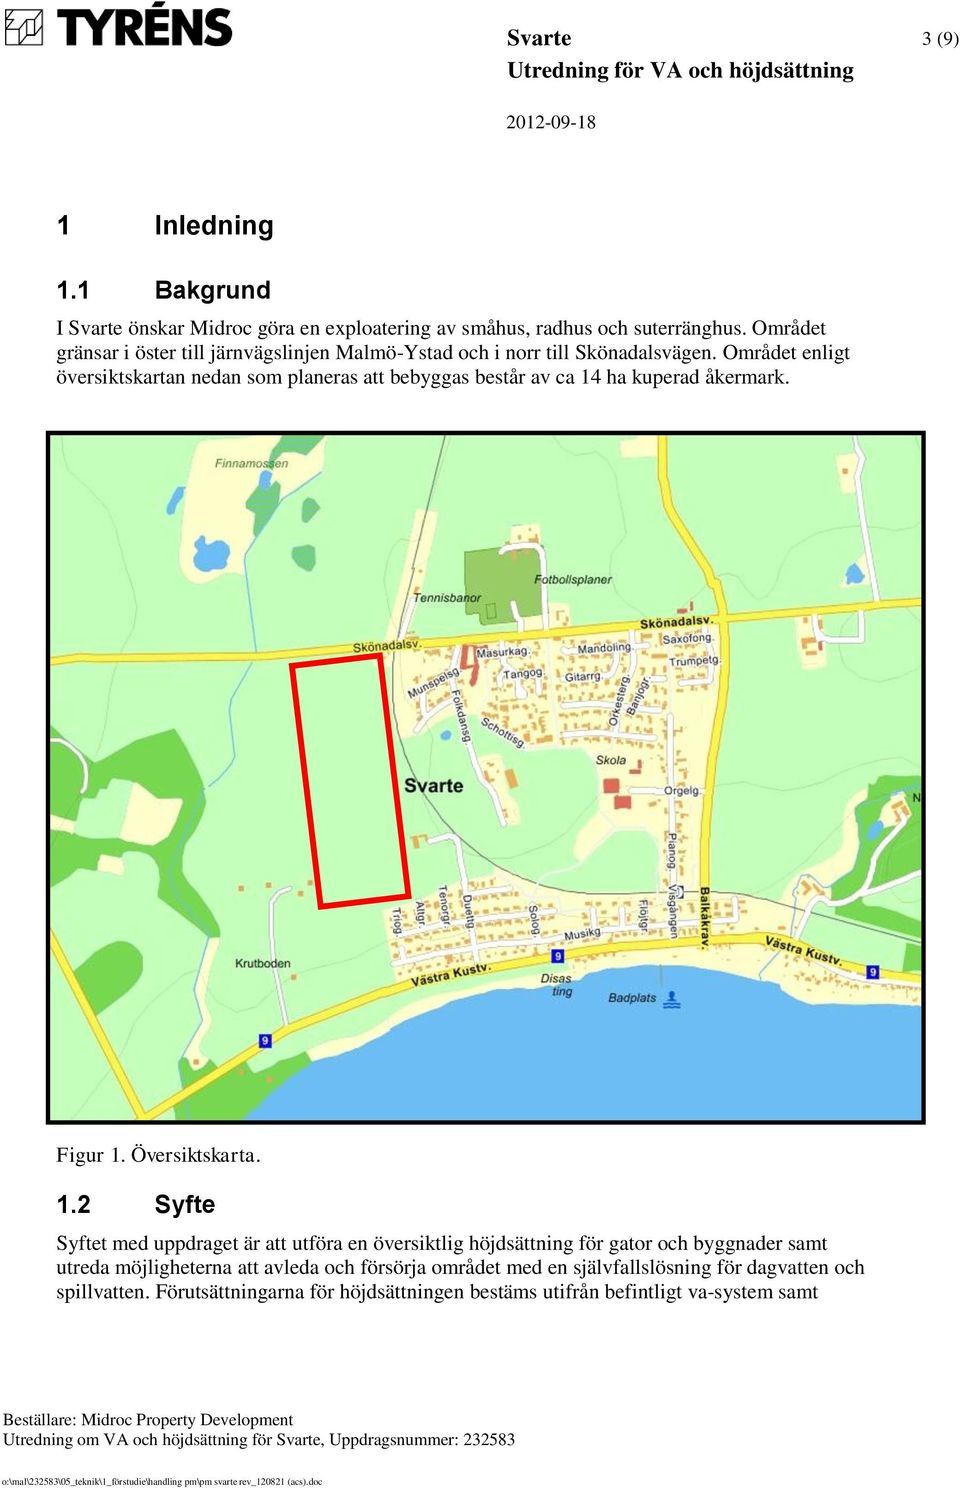 Området enligt översiktskartan nedan som planeras att bebyggas består av ca 14